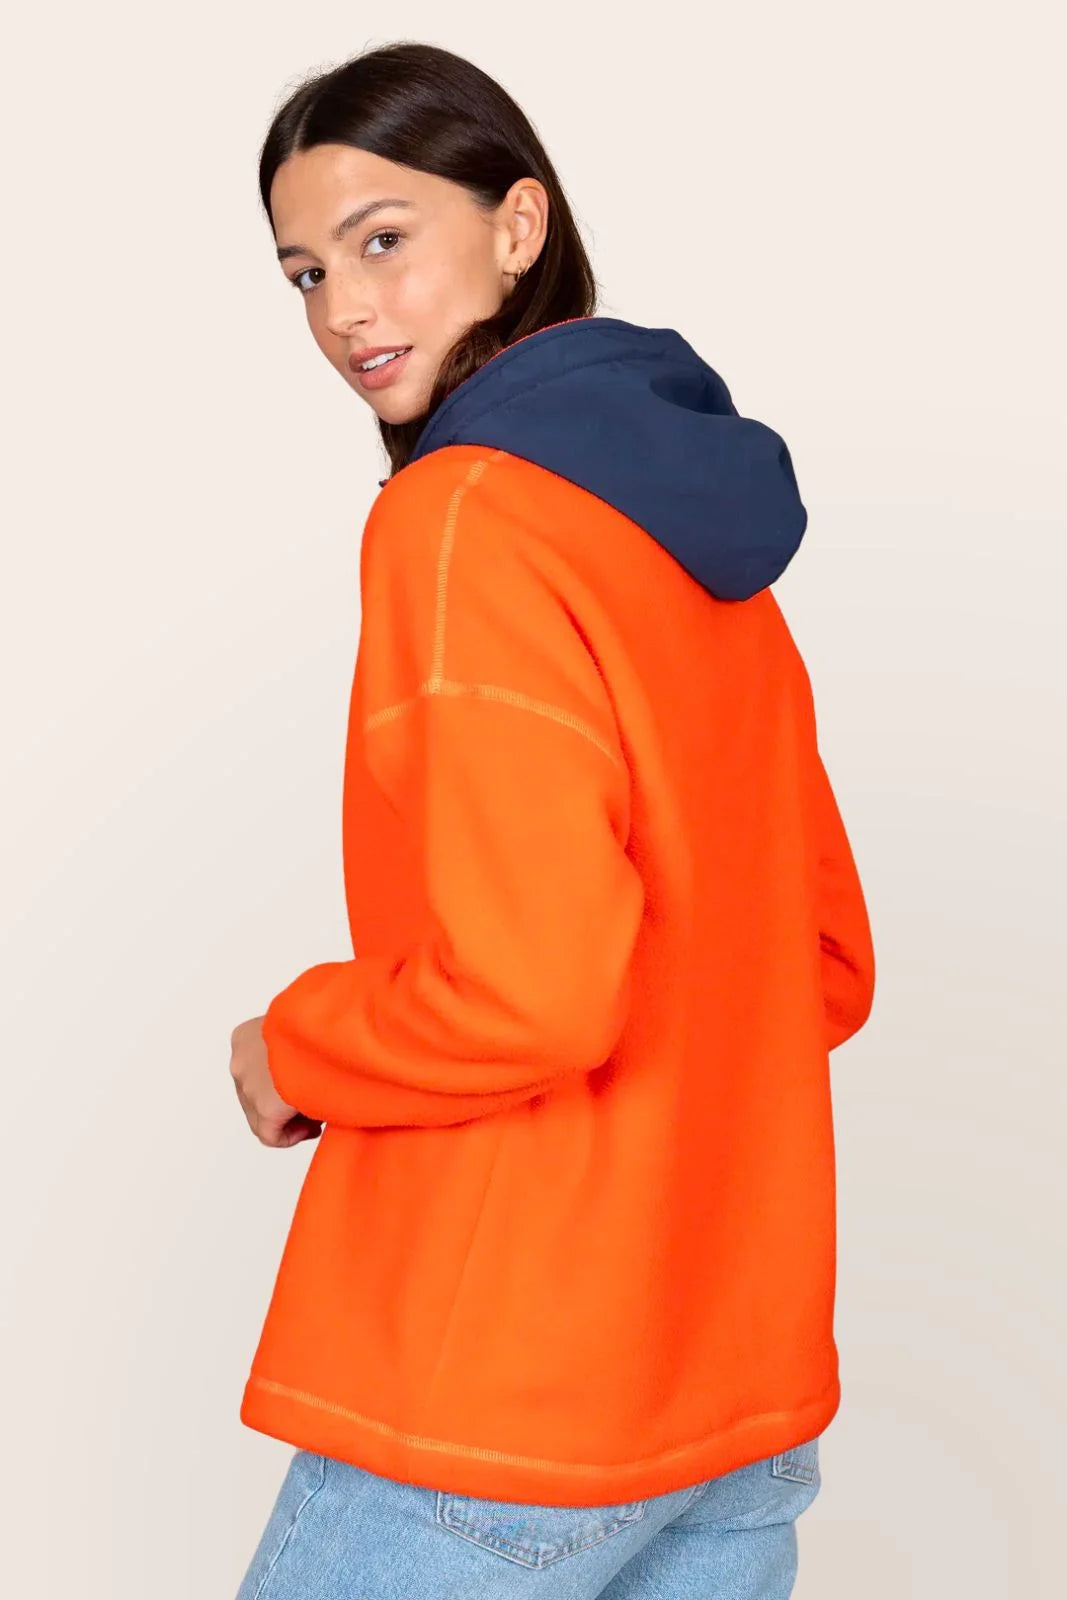 Belleville - Waterproof fleece hoodie - Flotte #couleur_tomate